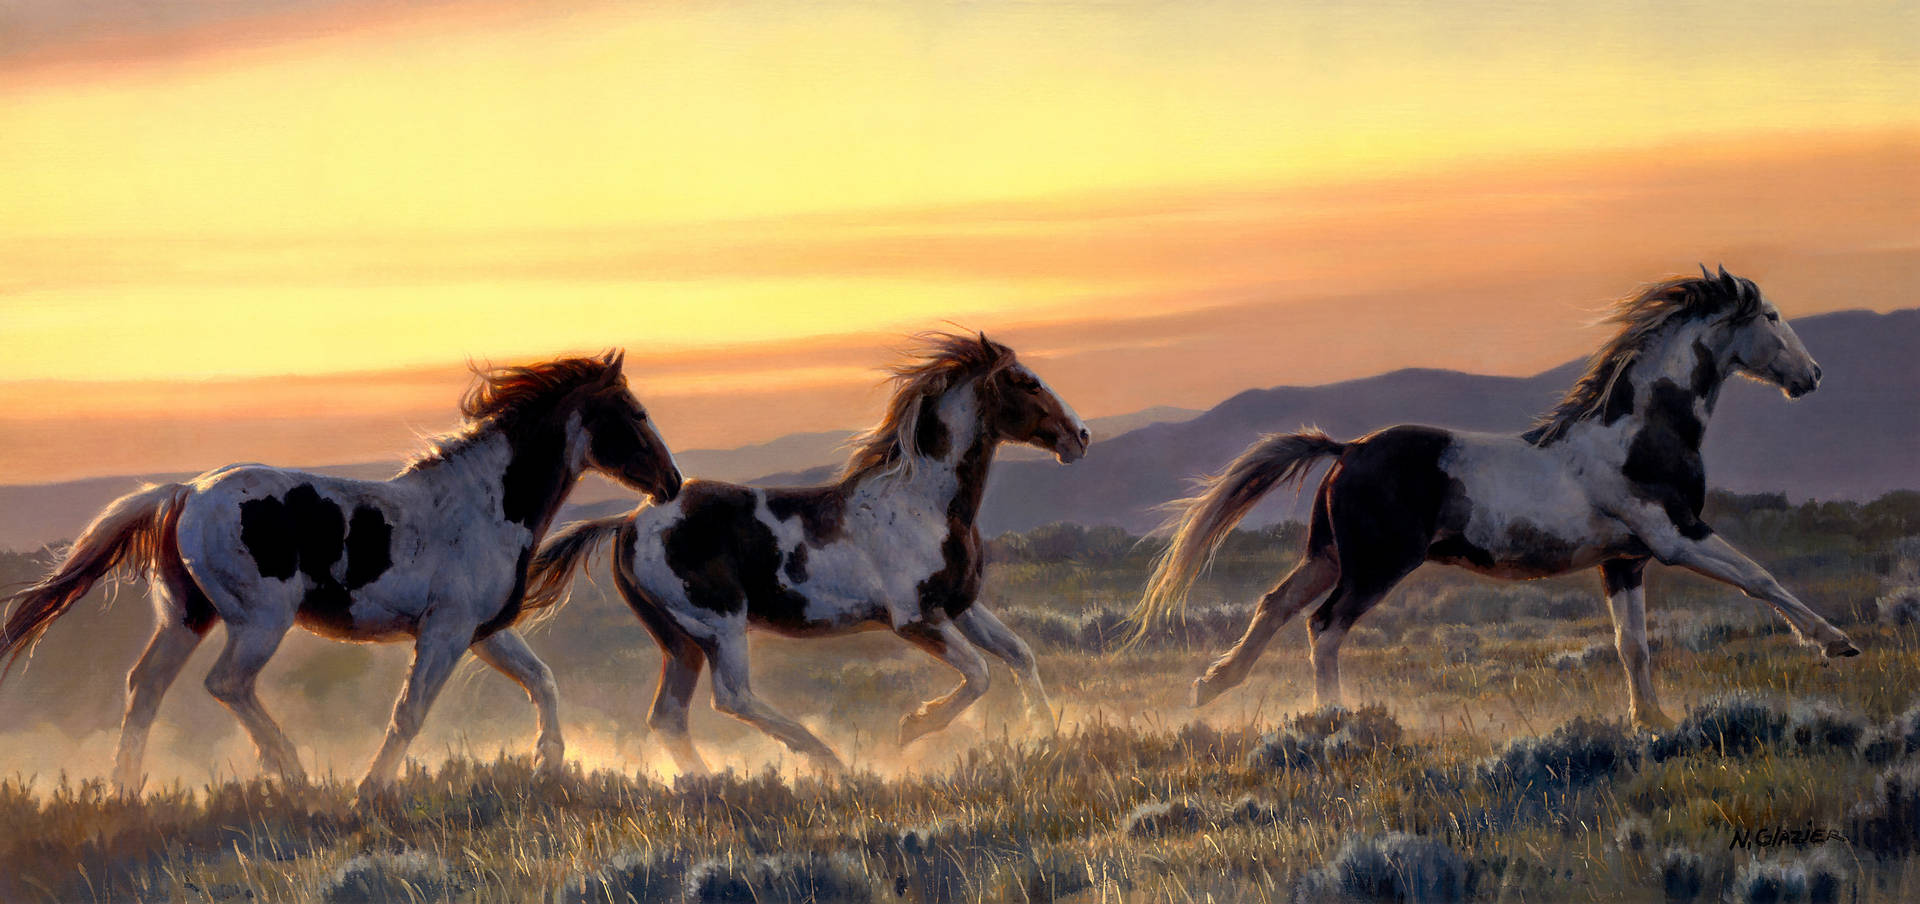 Yellow 4k Sky With Nancy Glazier Horses Background